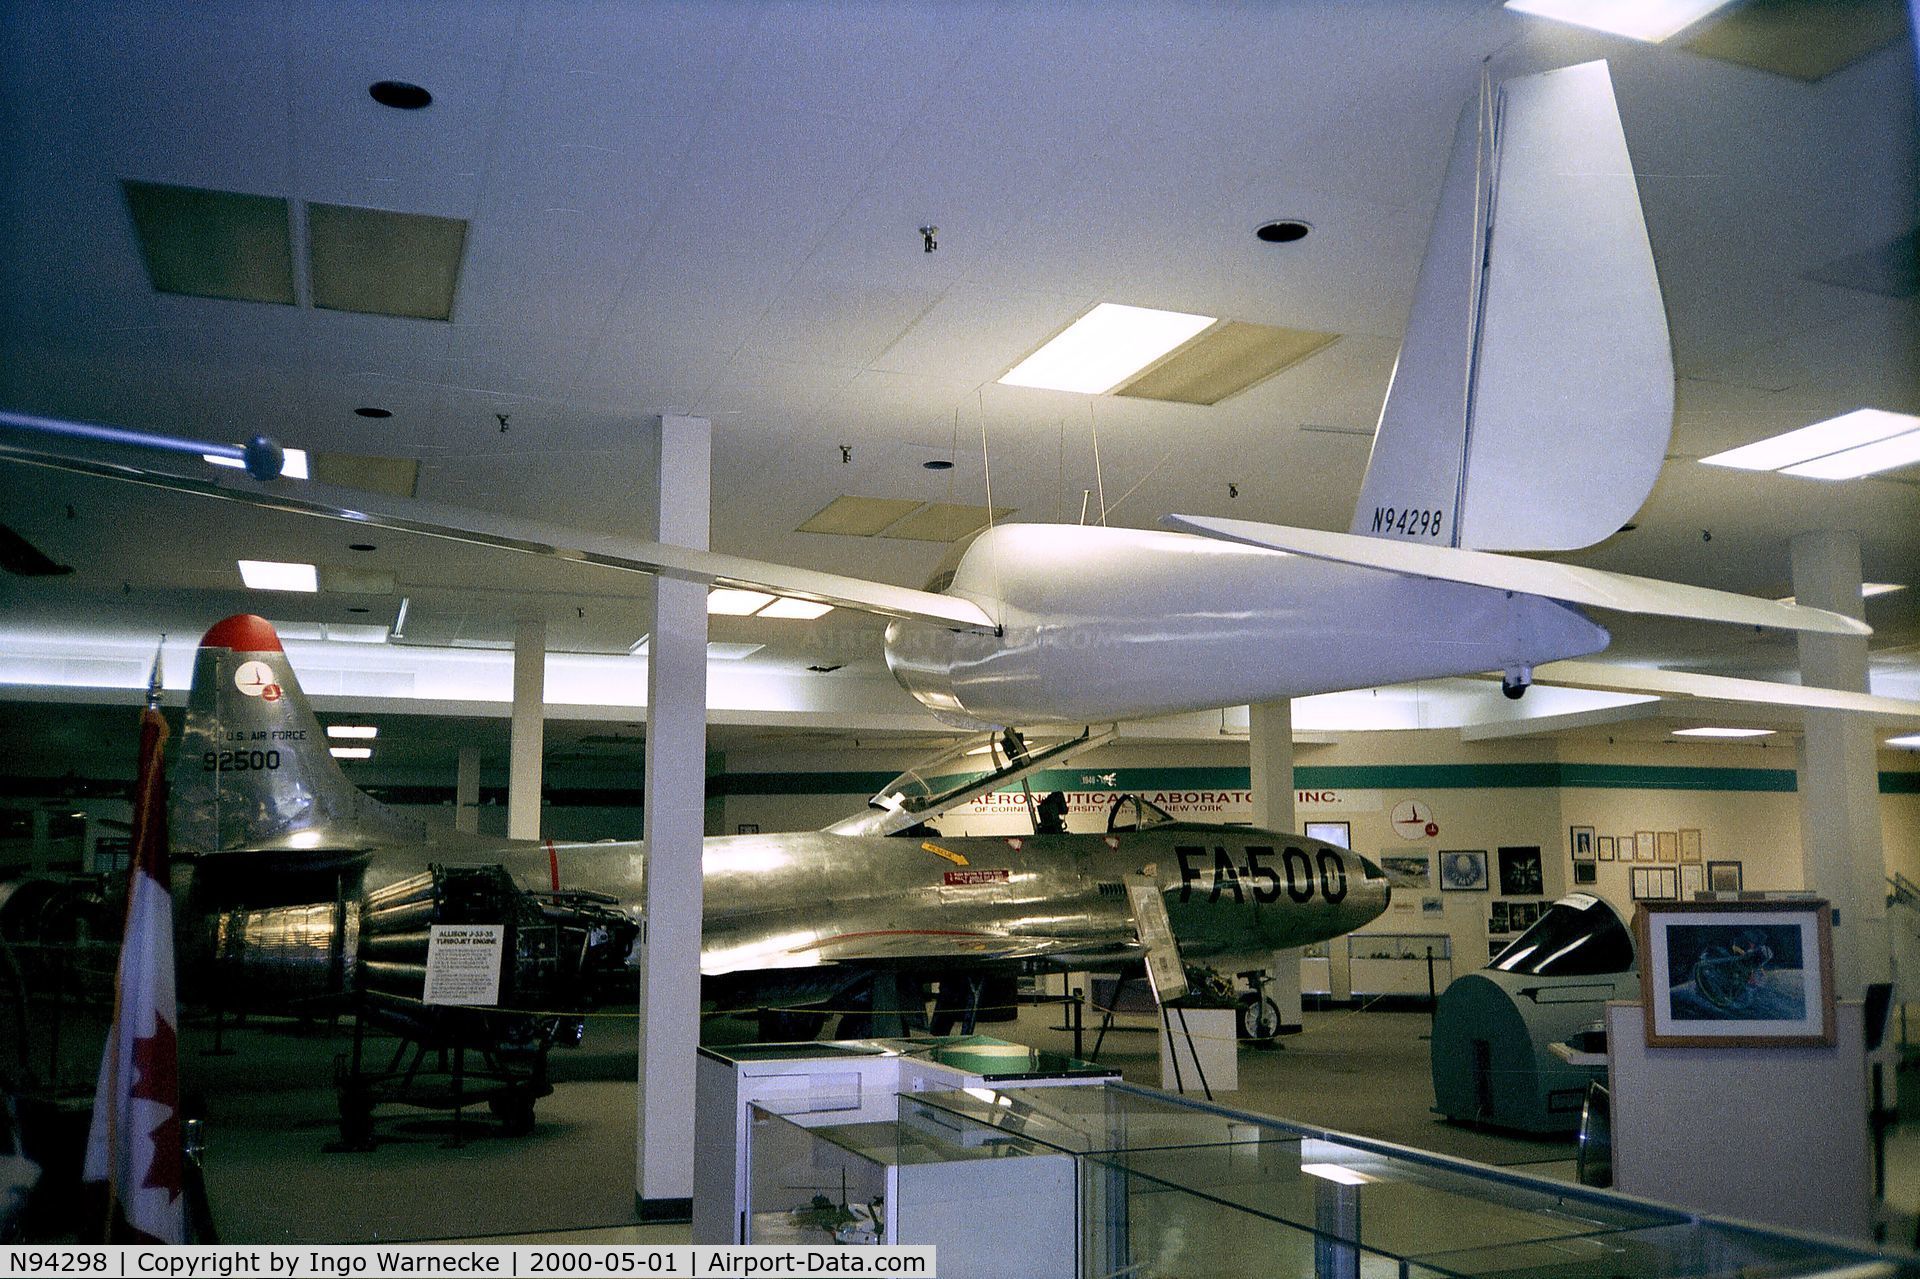 N94298, 1967 Schweizer SGS 1-23HM C/N 70, Schweizer SGS 1-23HM at the Niagara Aerospace Museum, Niagara Falls NY